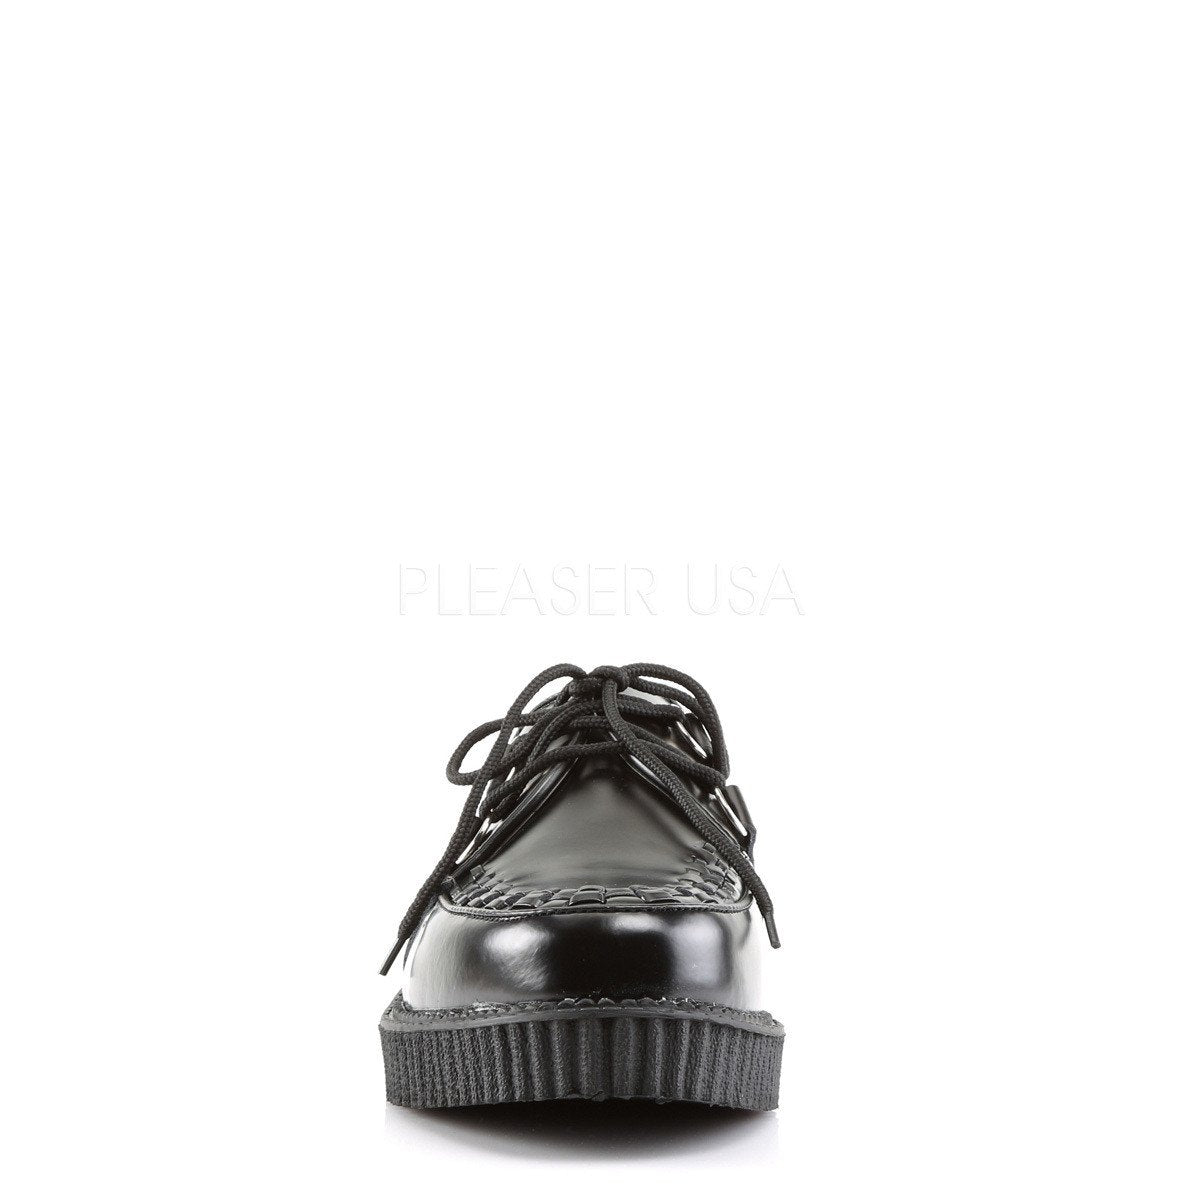 Rockabilly Men's Black Shoes ( Unisex )